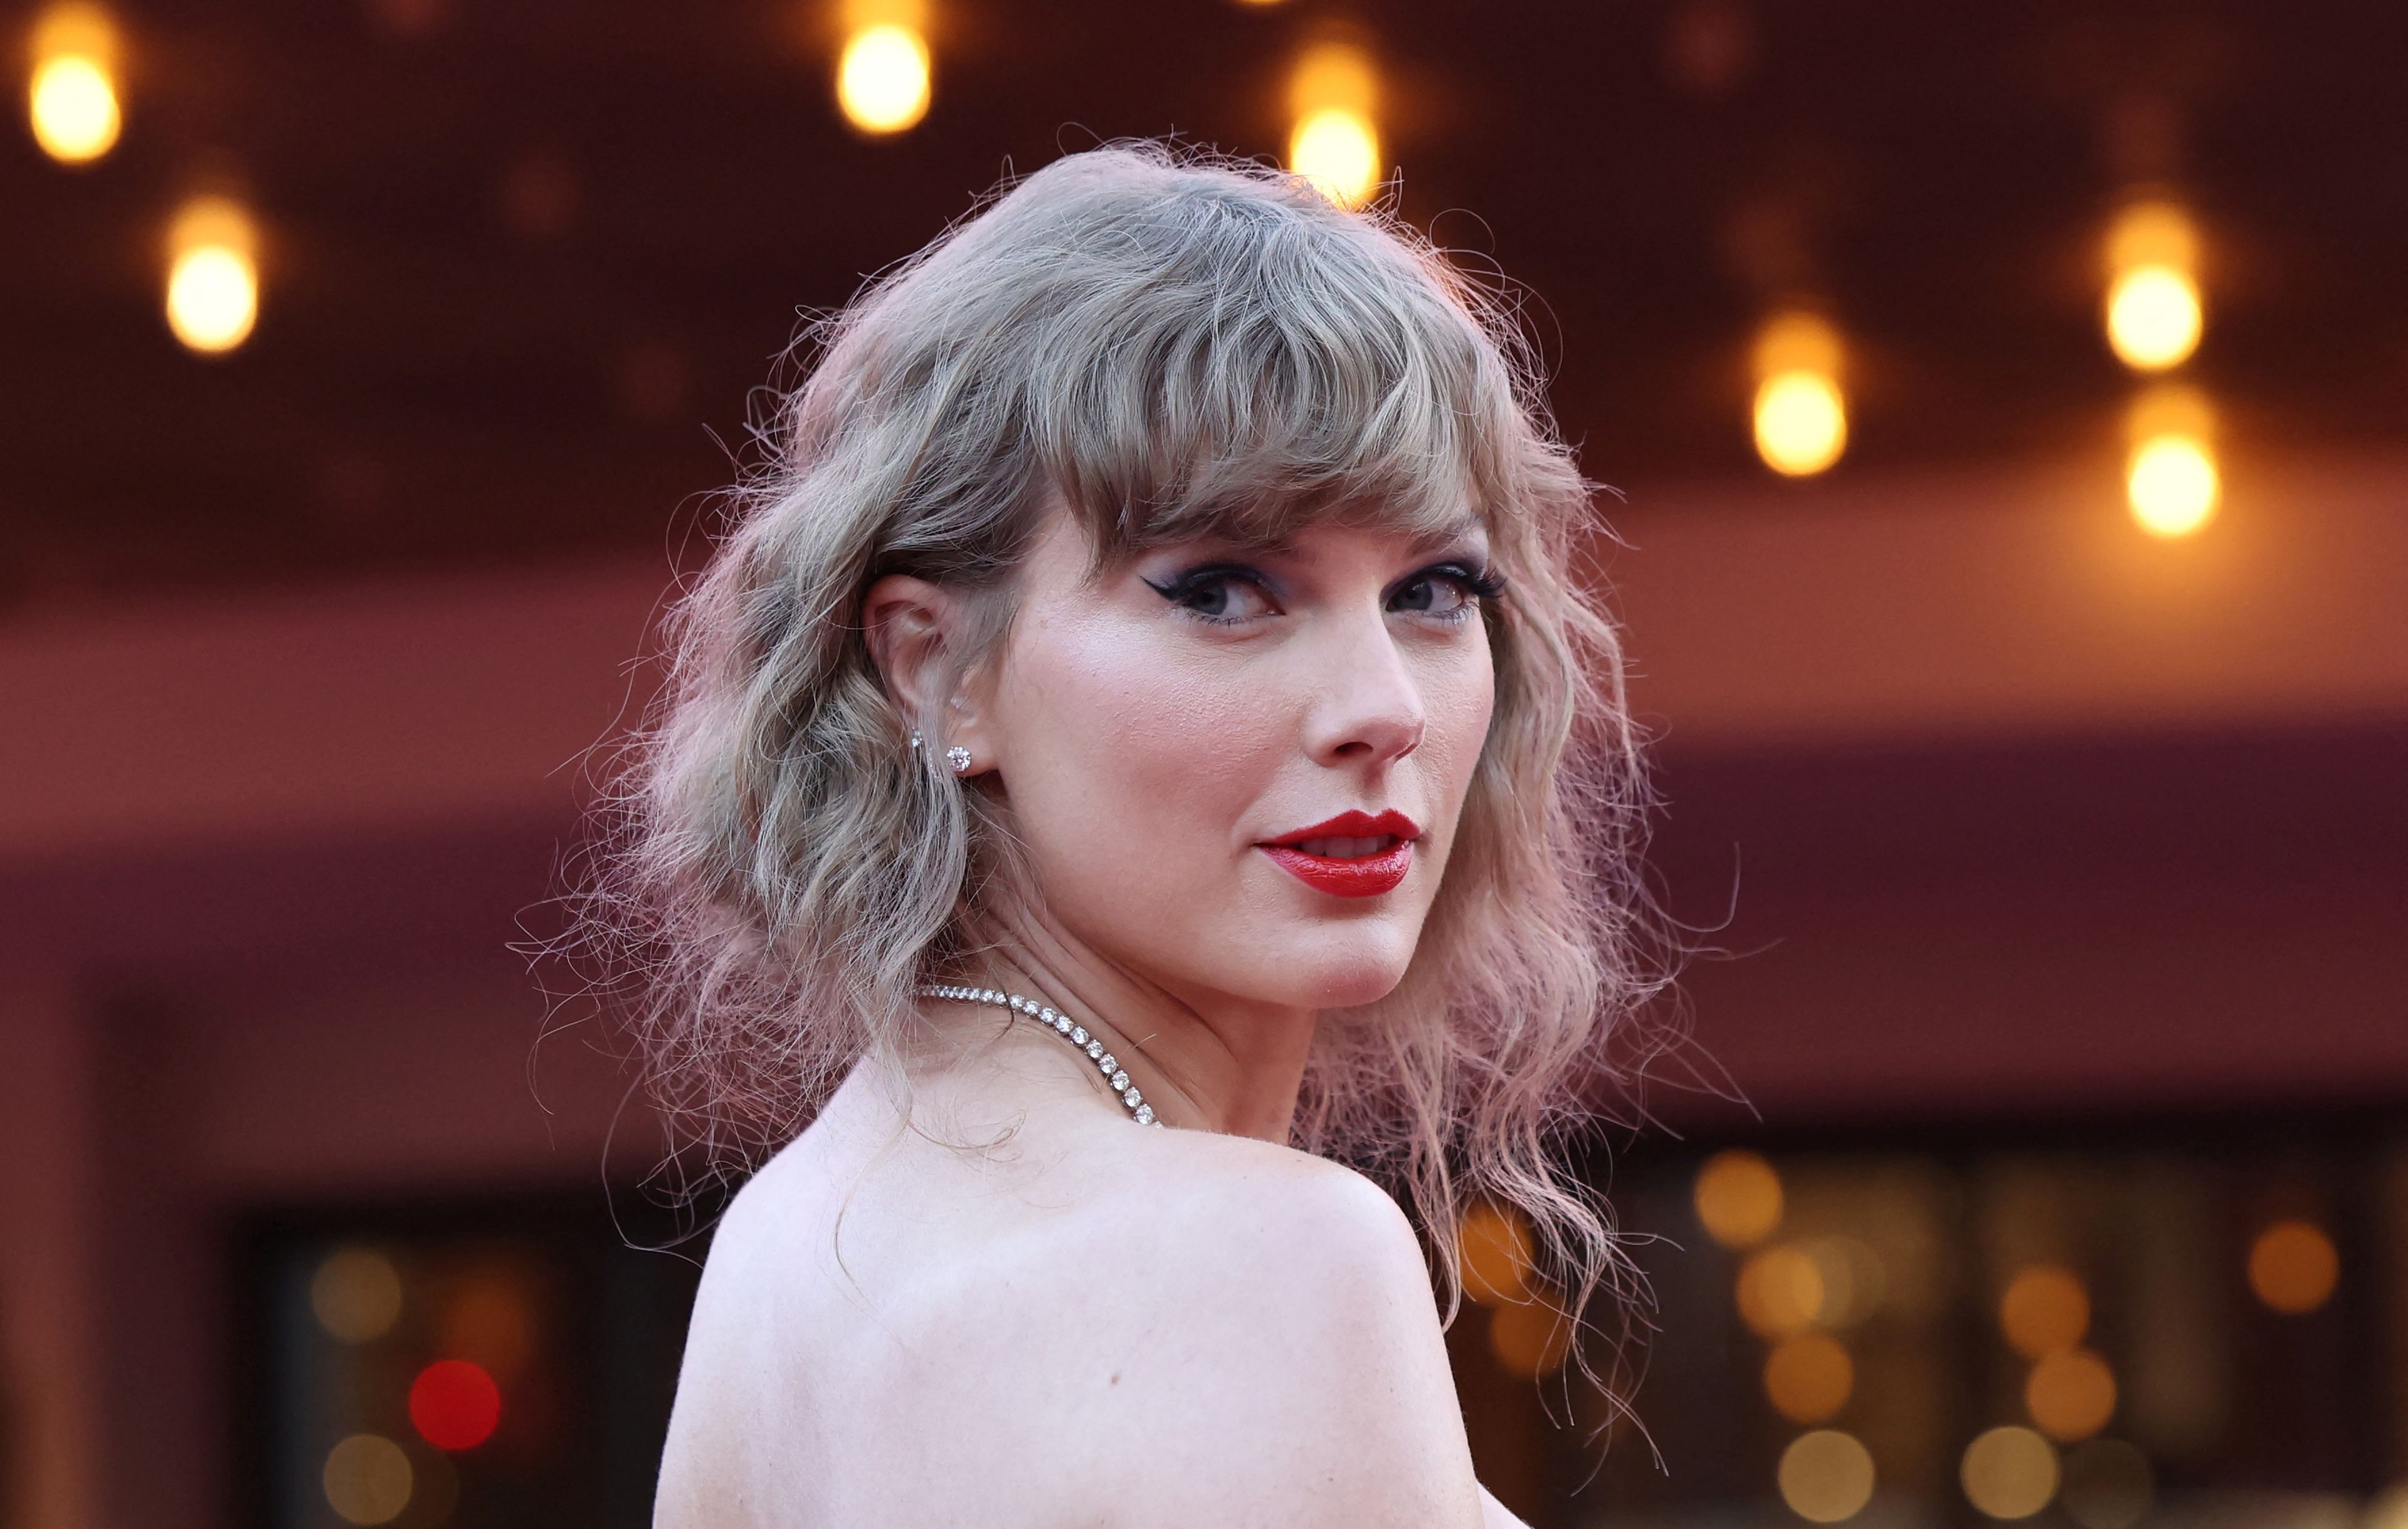 La foto del día: Varias imágenes sexualmente explícitas de Taylor Swift generadas por inteligencia artificial han inundado X (antes Twitter) durante las últimas horas, en el último ejemplo de la proliferación del porno falso generado por IA.